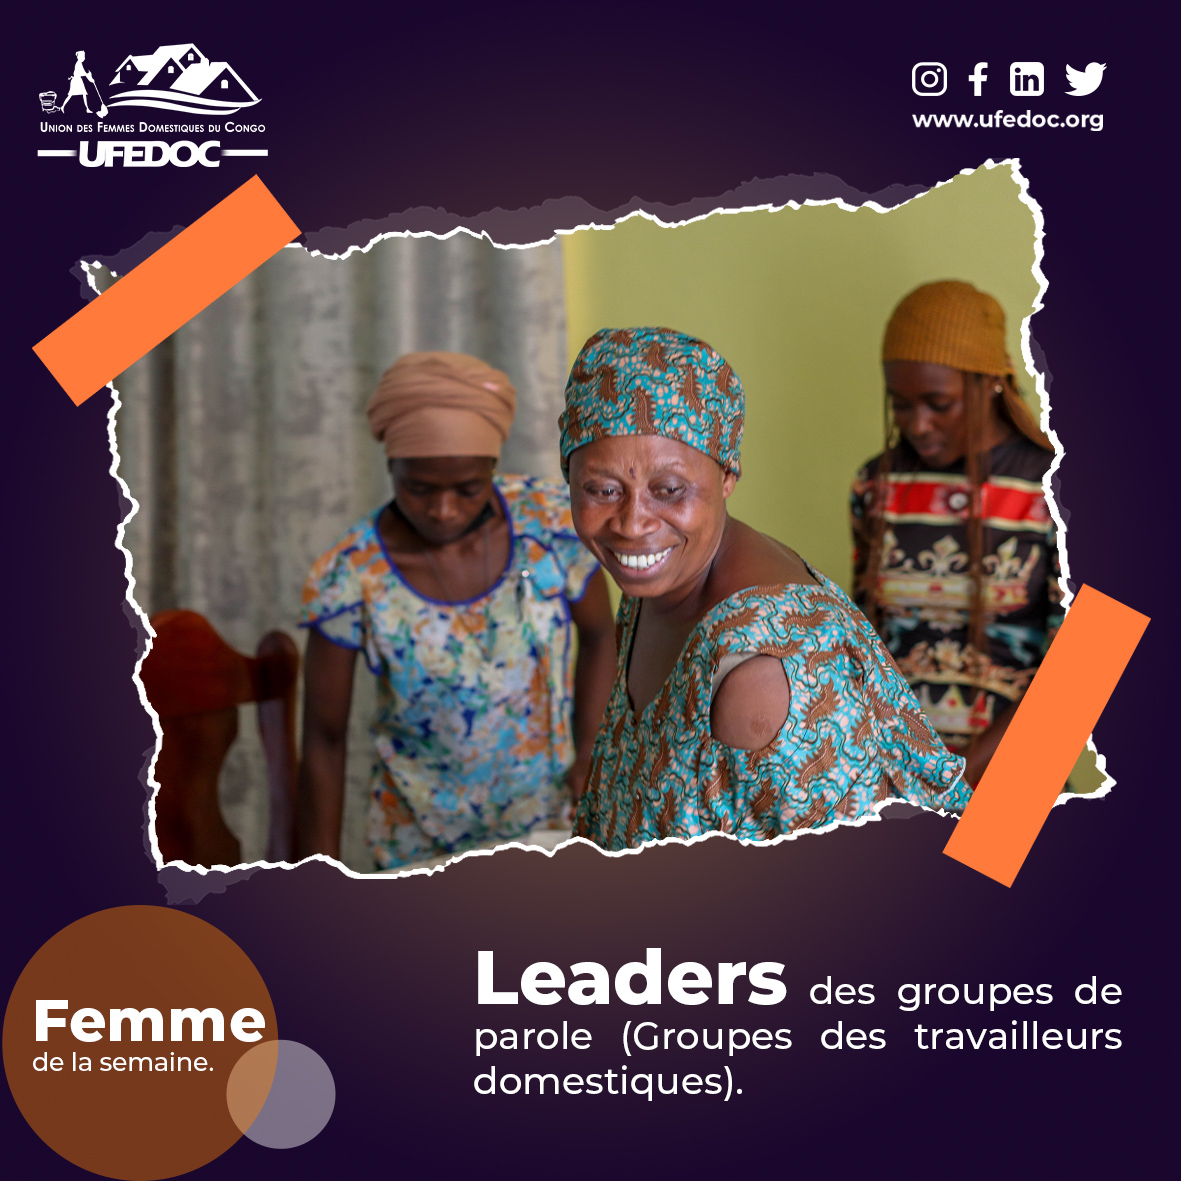 Hommage aux femmes leaders de nos groupes de travailleurs domestiques dans la communauté. Le rôle qu'elles jouent est essentiel dans l'encadrement et l'animation de ces groupes...
#Femmedelasemaine #8mars2024 #TravailleusesDomestiques